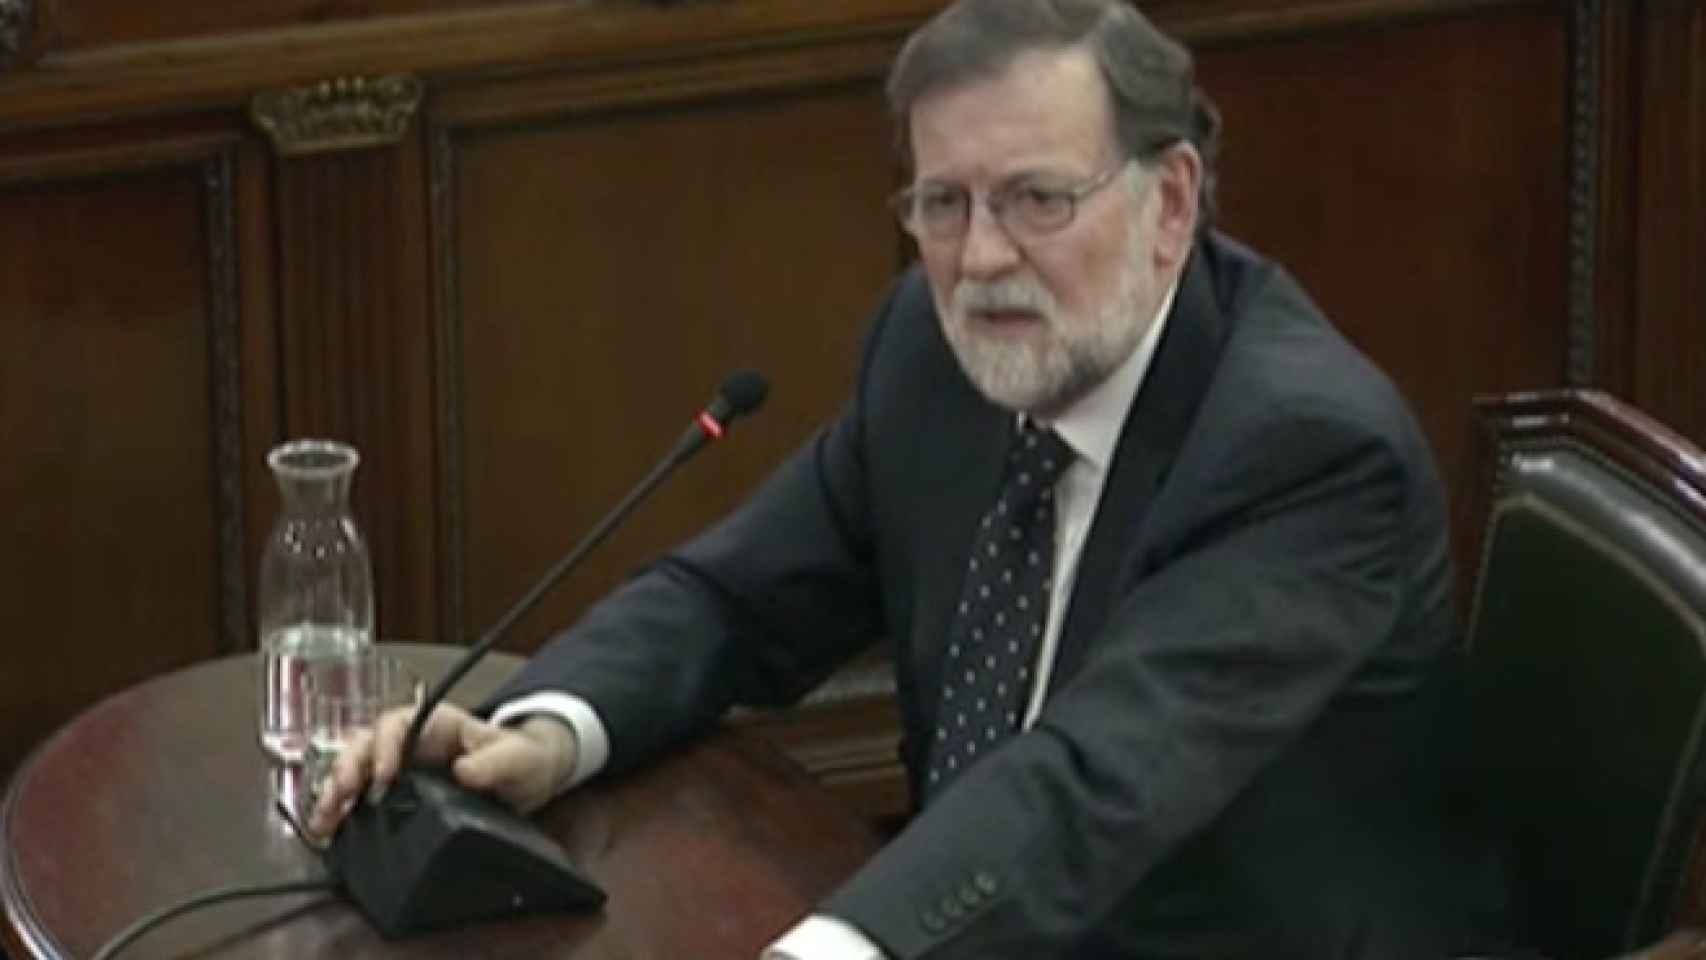 Mariano Rajoy ante el Supremo